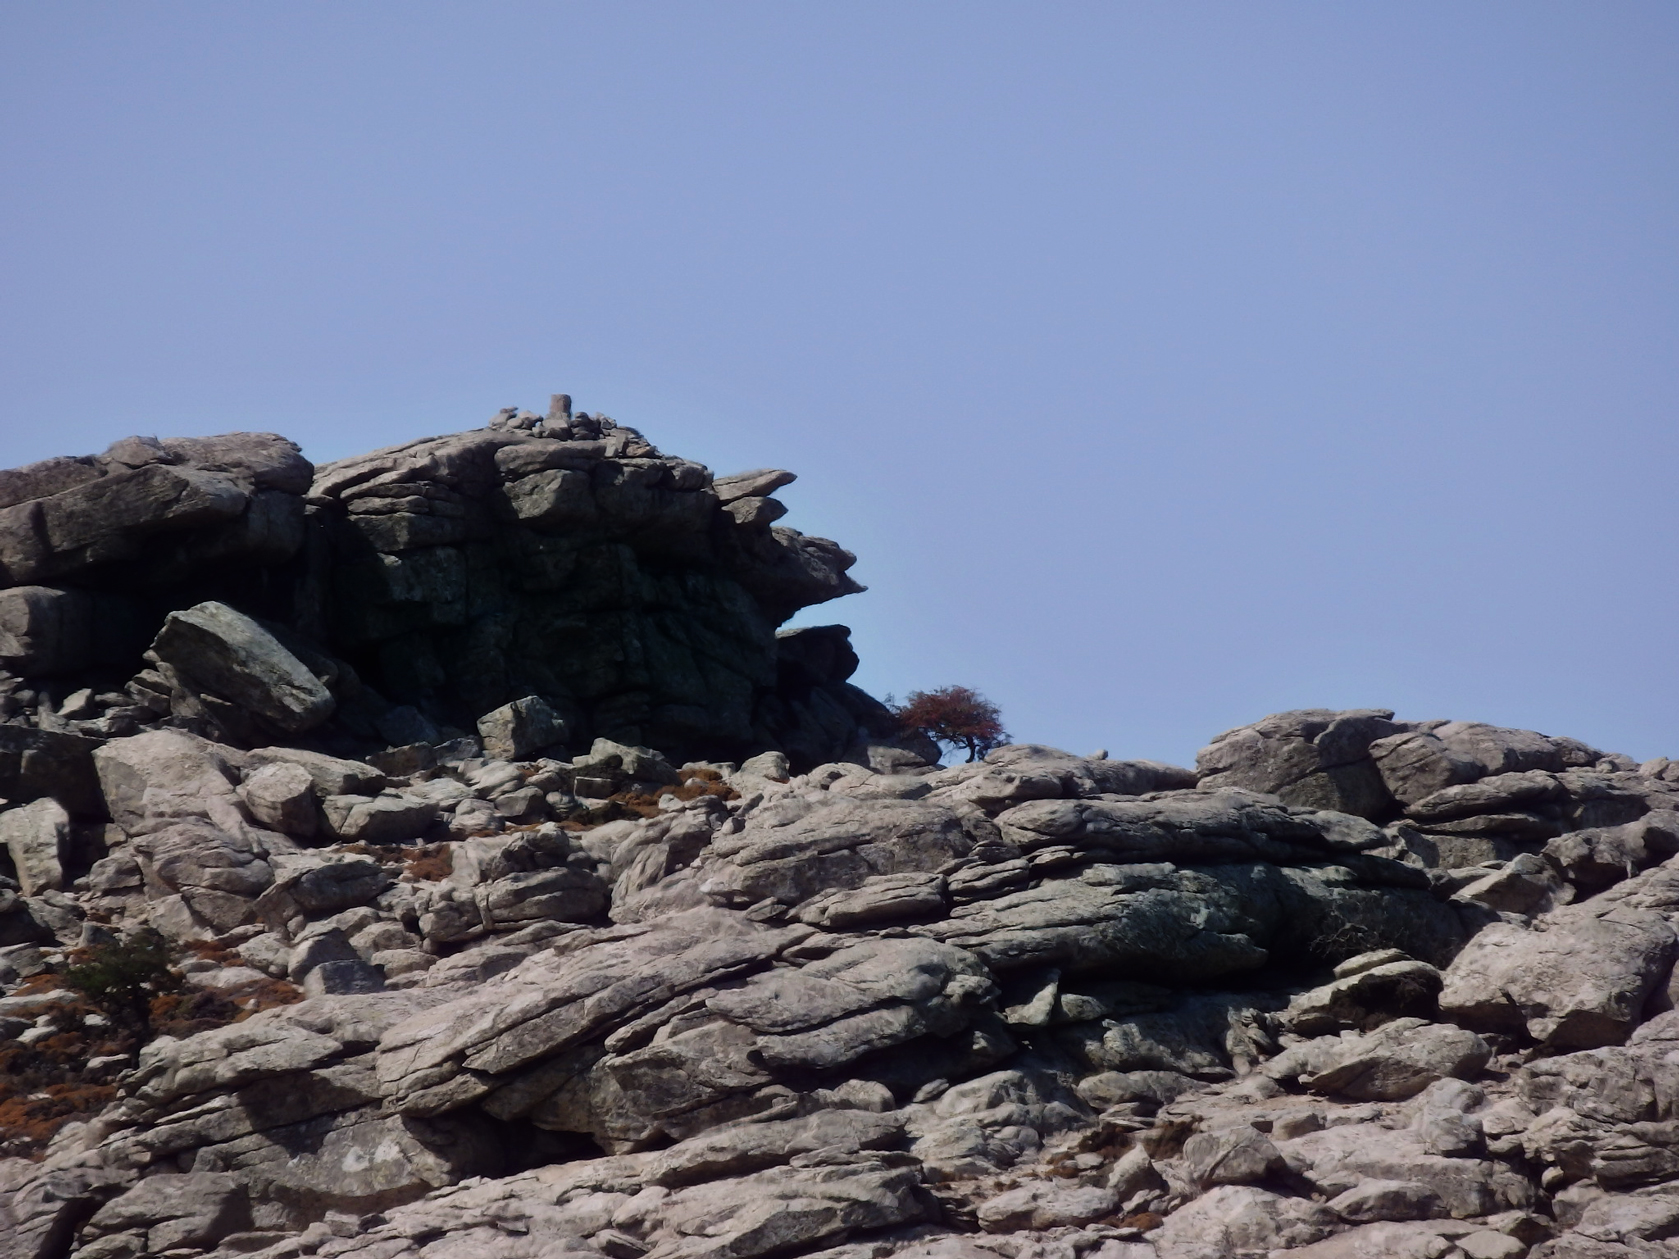 Κορυφή «Προβατοκεφάλα». Στο σχήμα που έχουν οι βράχοι, κάποιοι από μας διέκριναν τον λόγο της ονομασίας